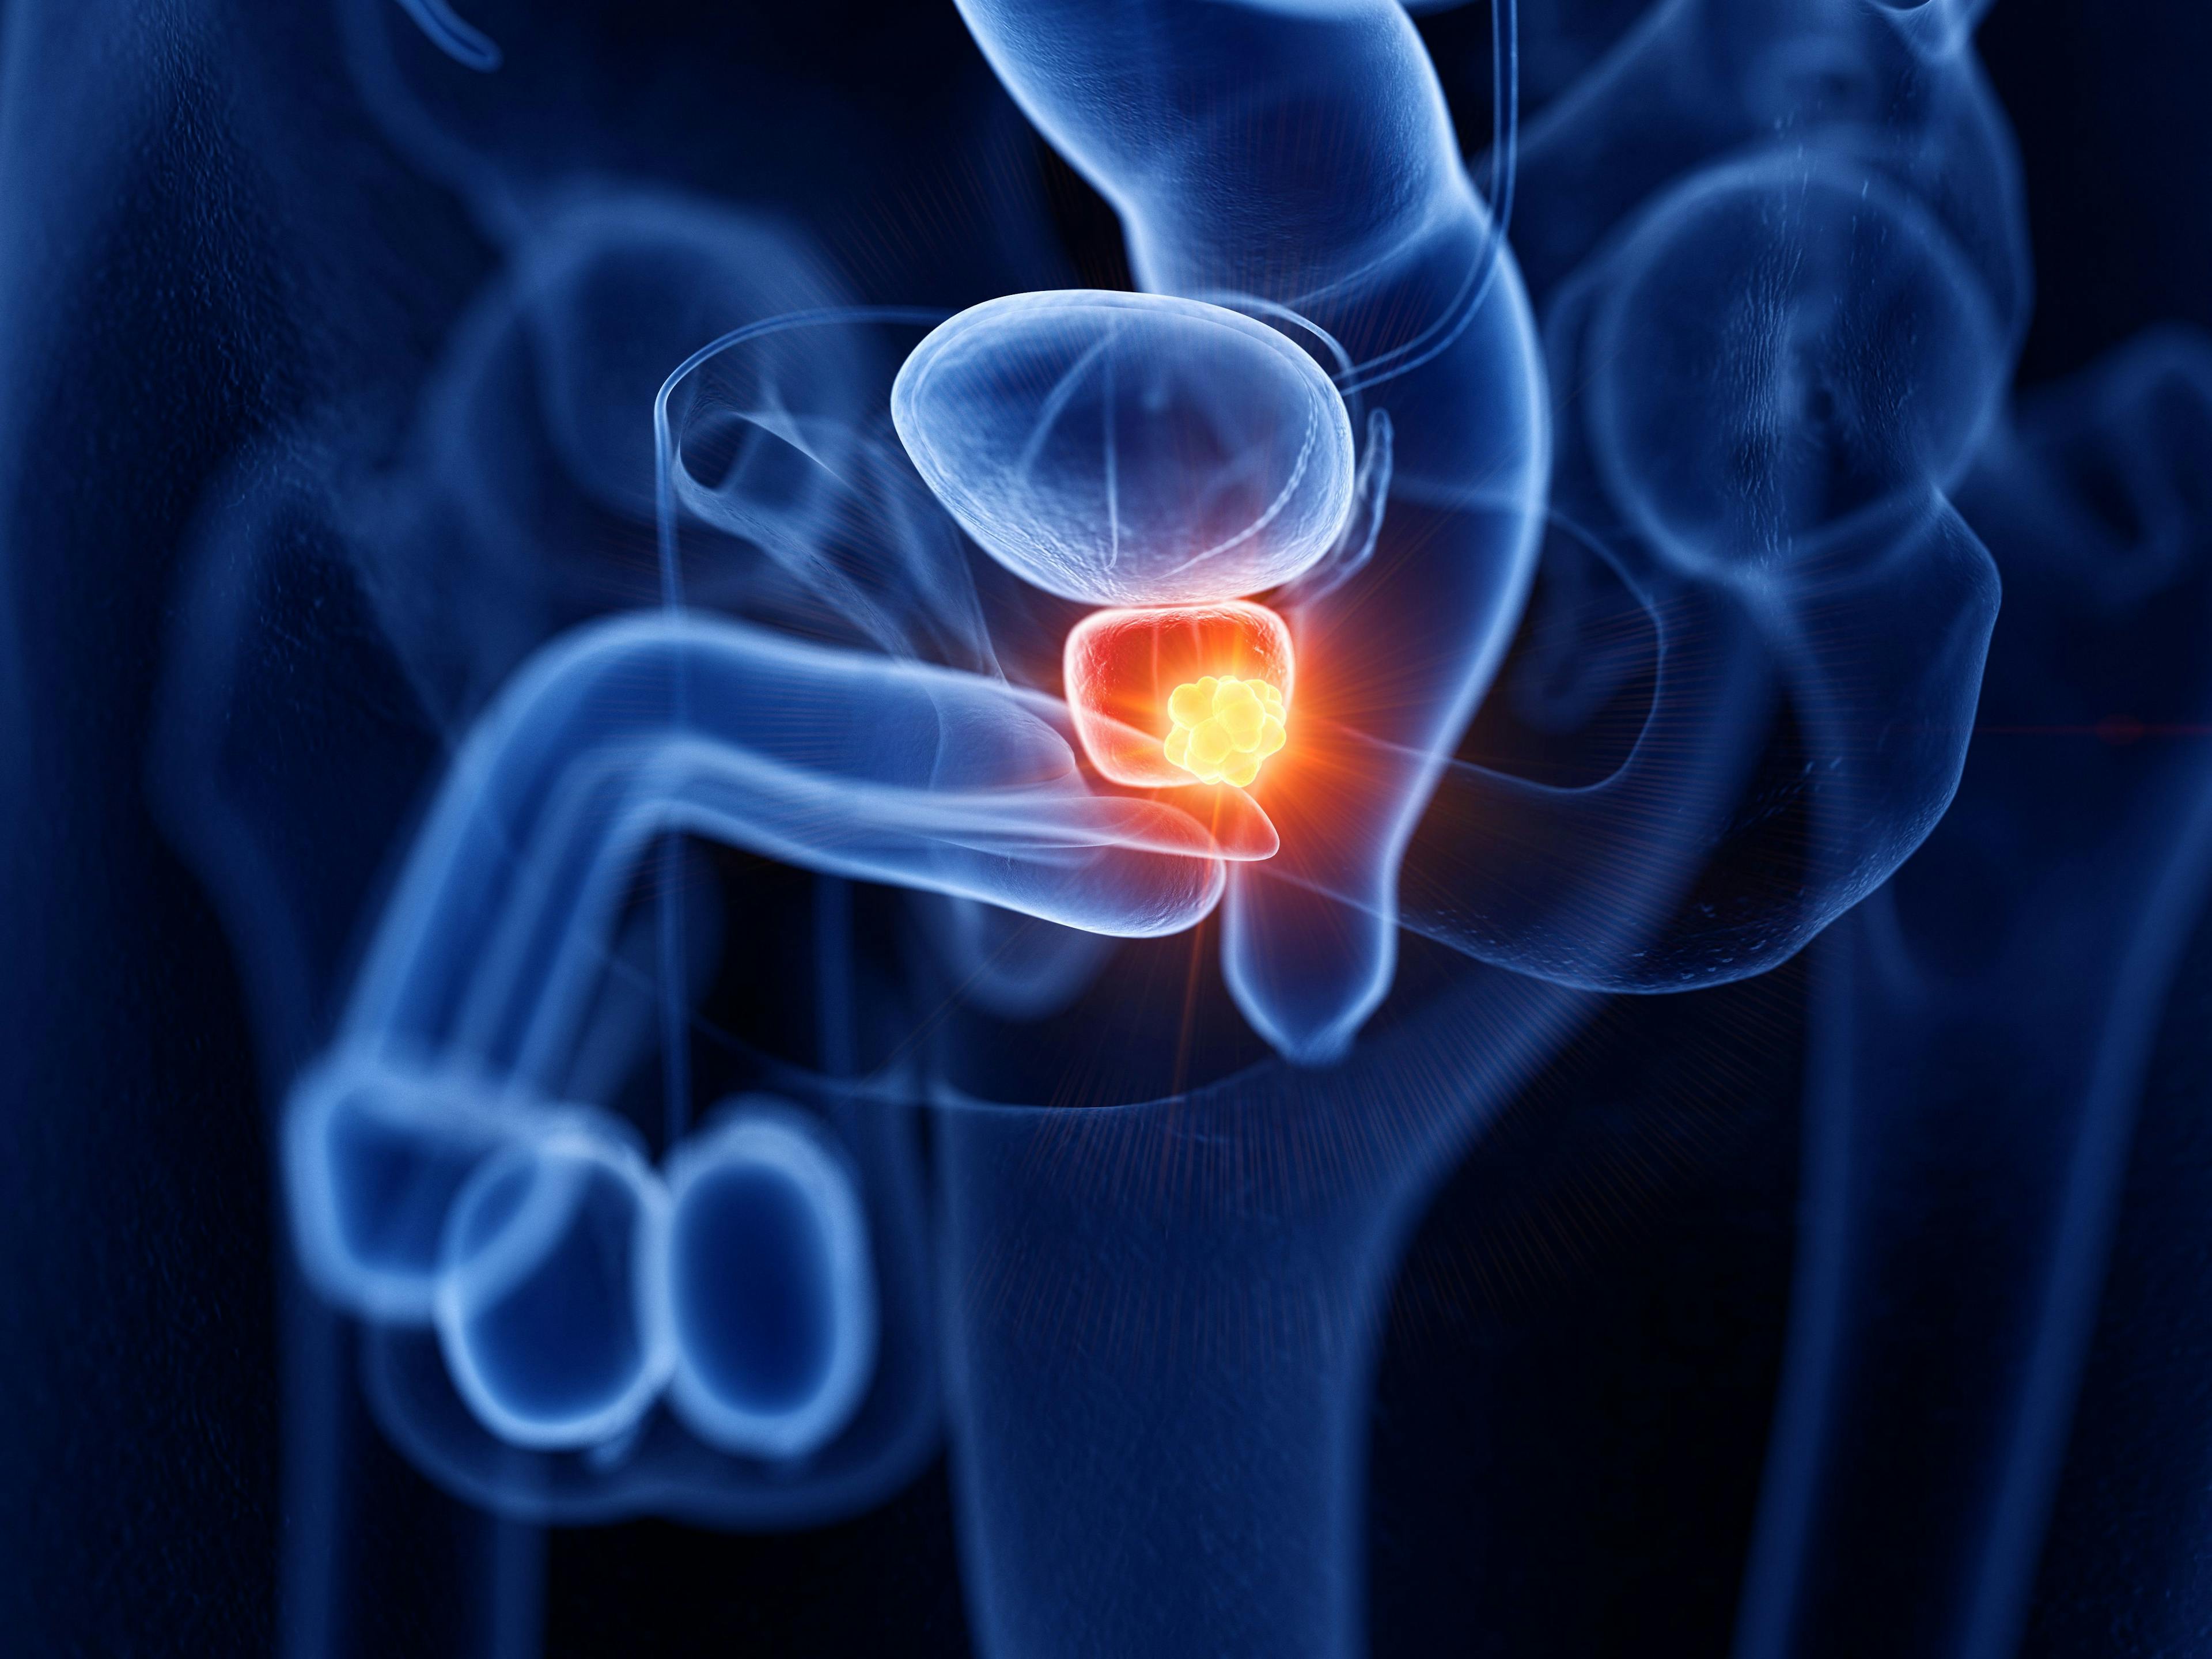 3D rendered illustration of prostate cancer | Image Credit: © SciePro | stock.adobe.com